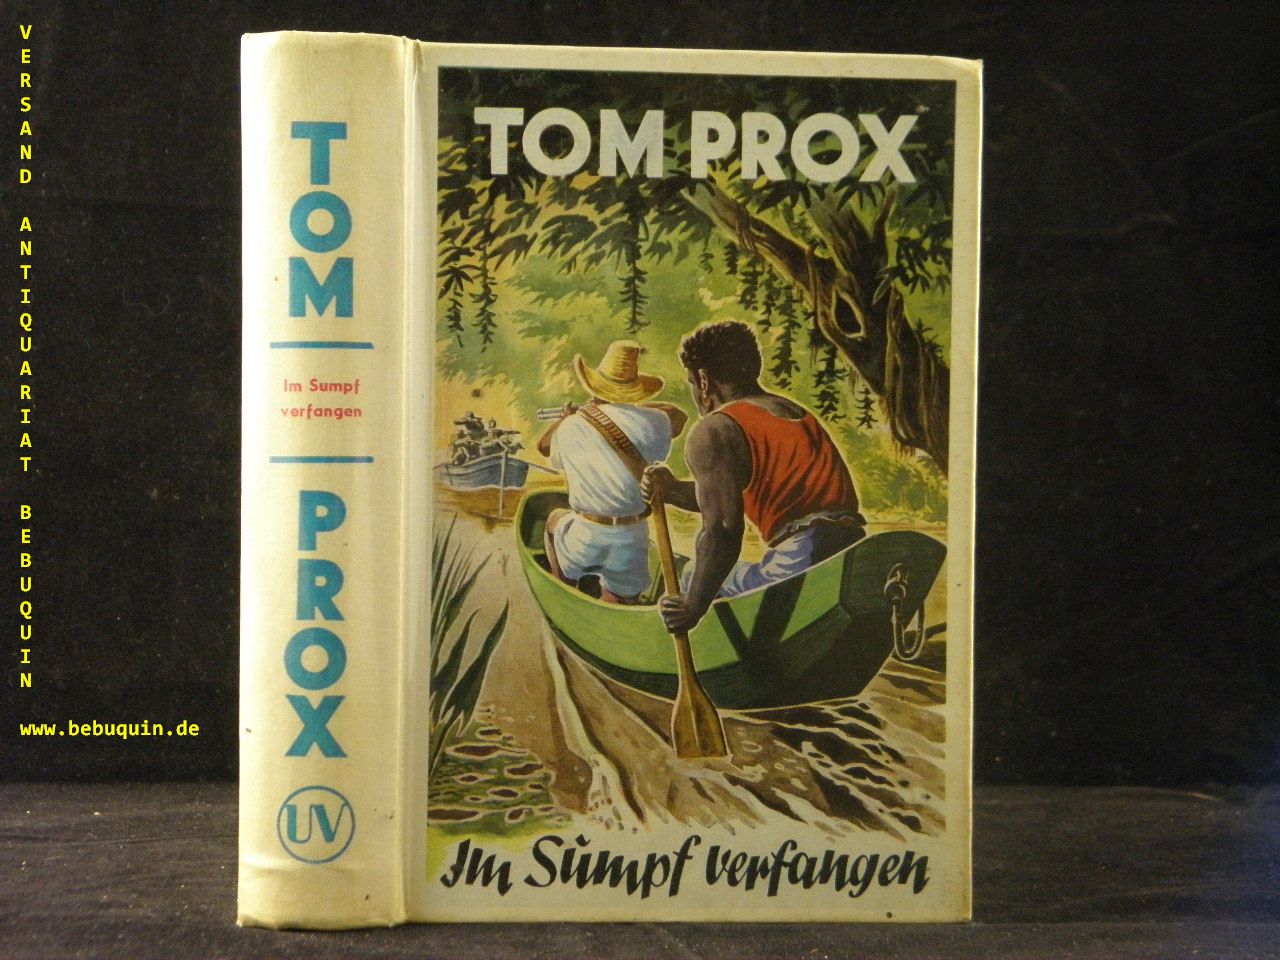 TOM PROX.-  ROBBY, Alex: - Im Sumpf verfangen.